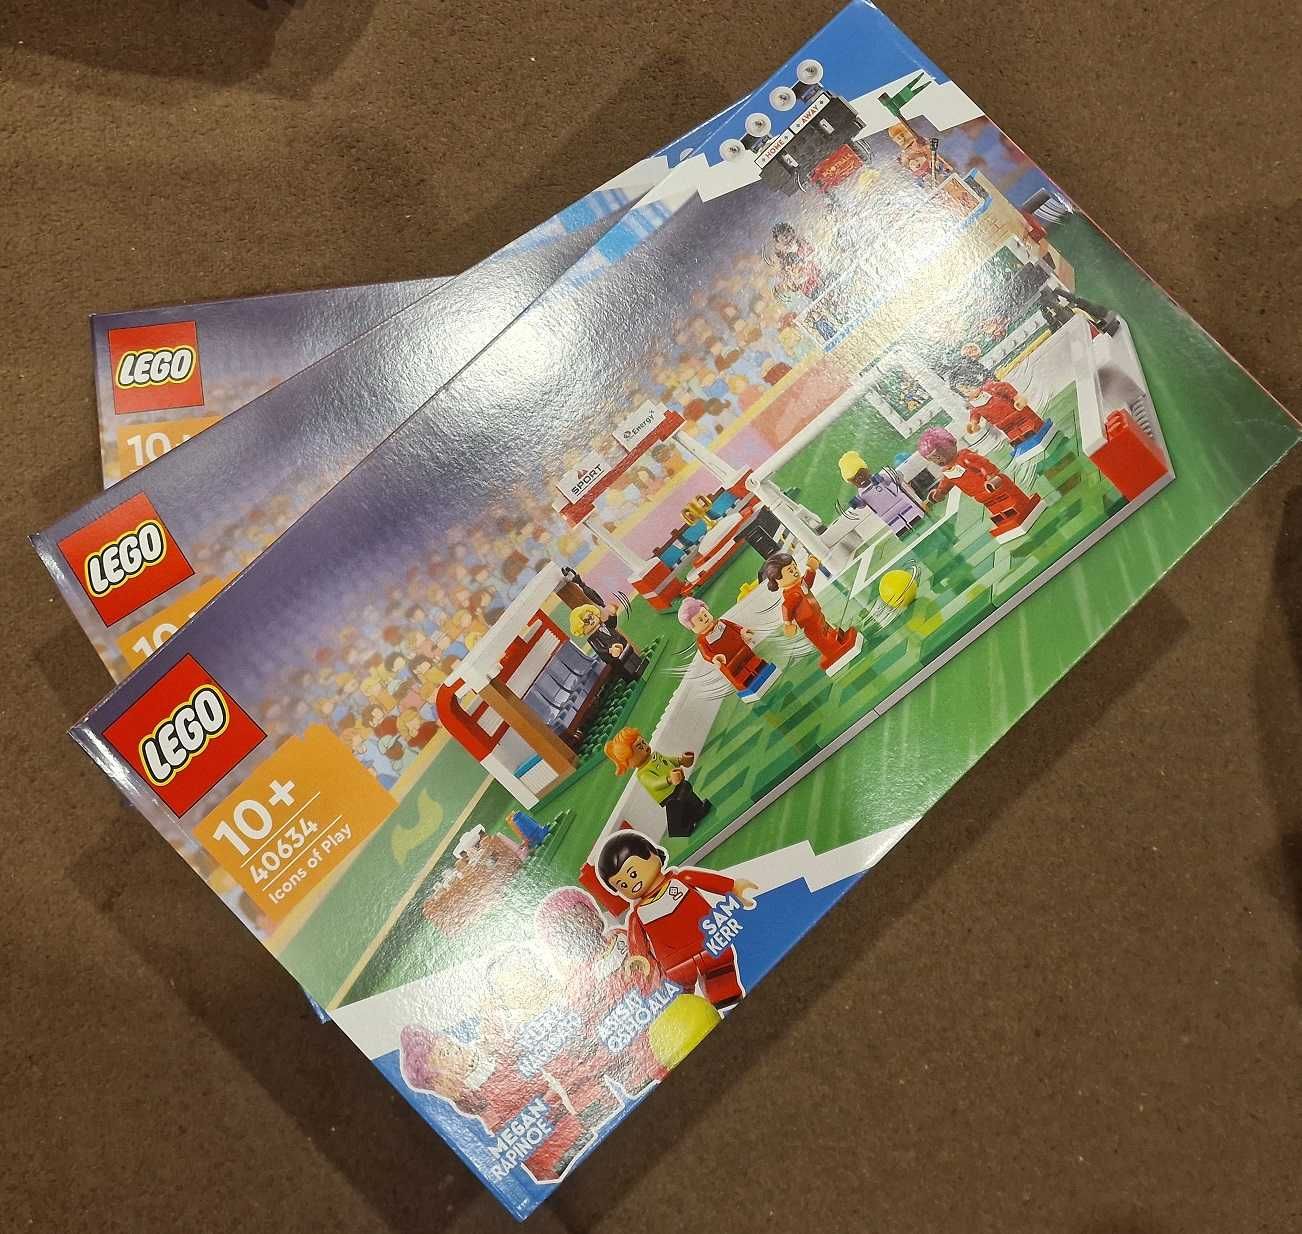 40634 LEGO - Ikony zabawy - boisko piłkarskie, piłkarze, var, trybuny